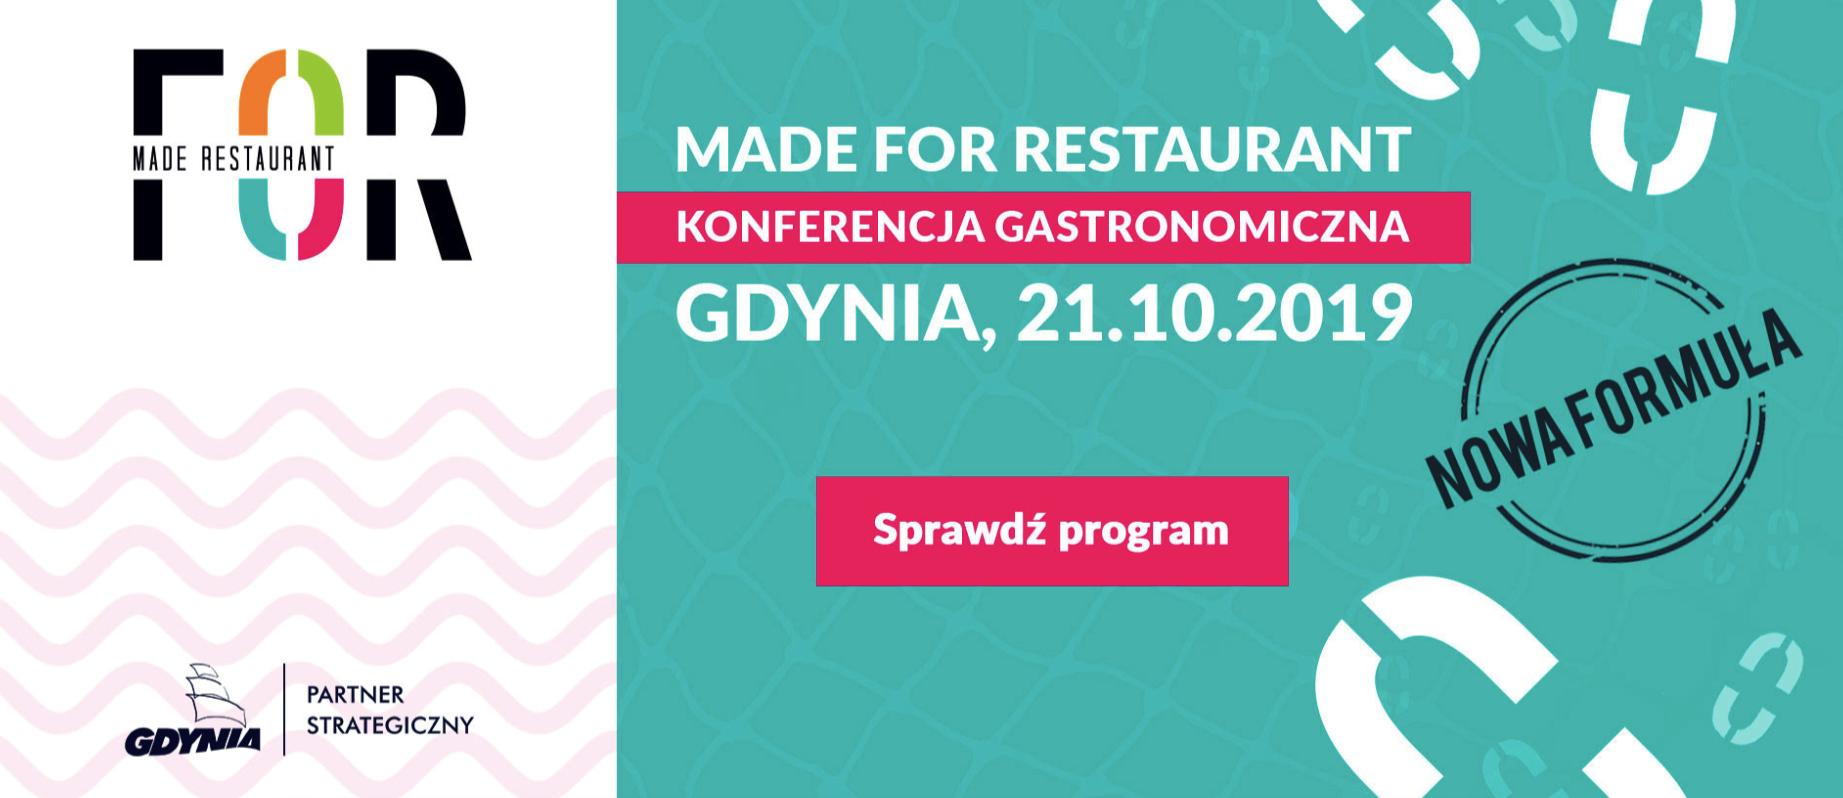 Made for Restaurant Gdynia 2019